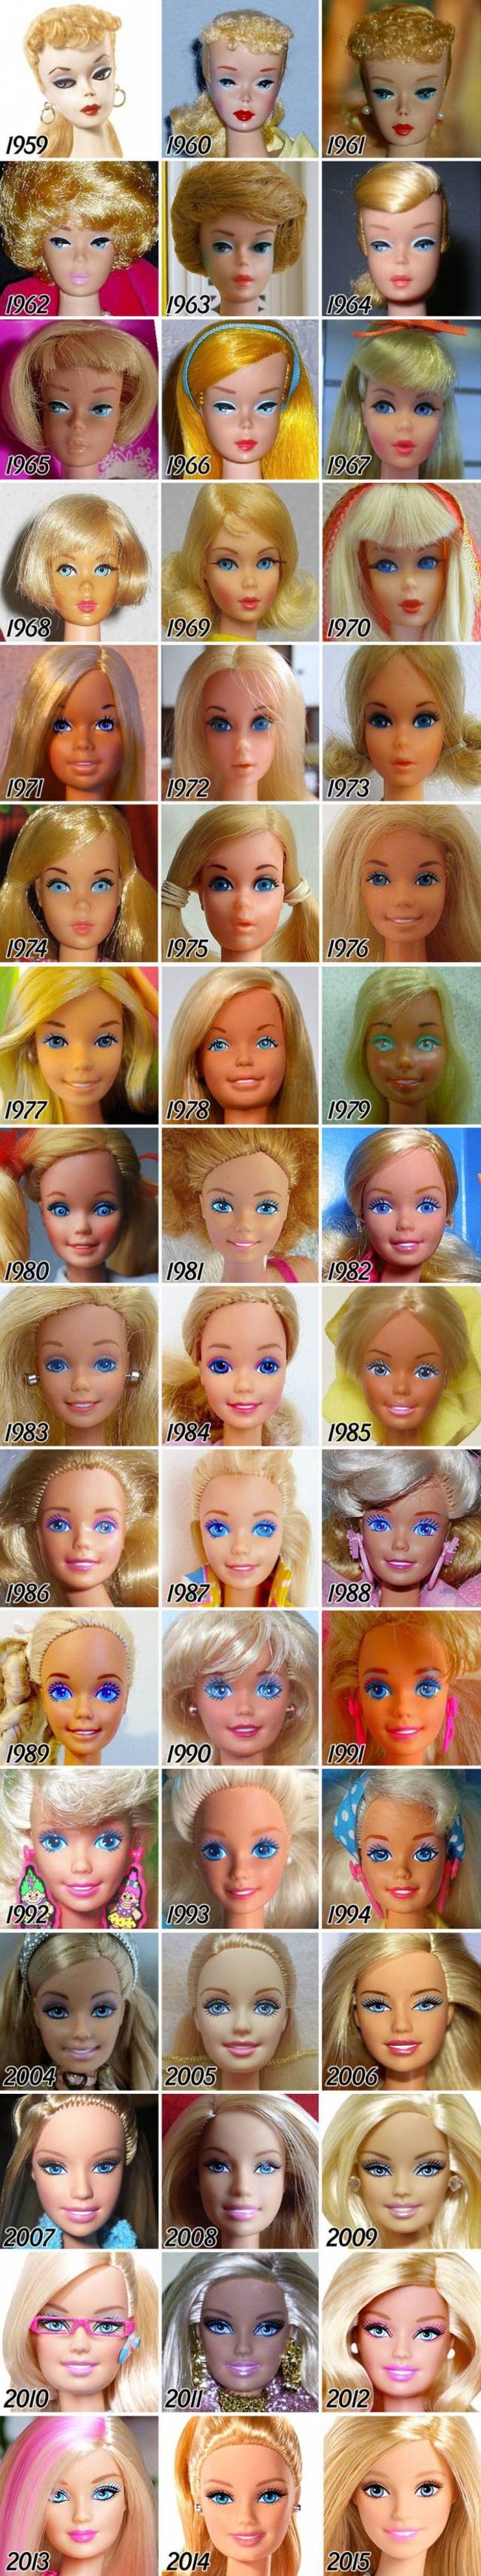 Как менялась кукла Барби в течение 58 лет